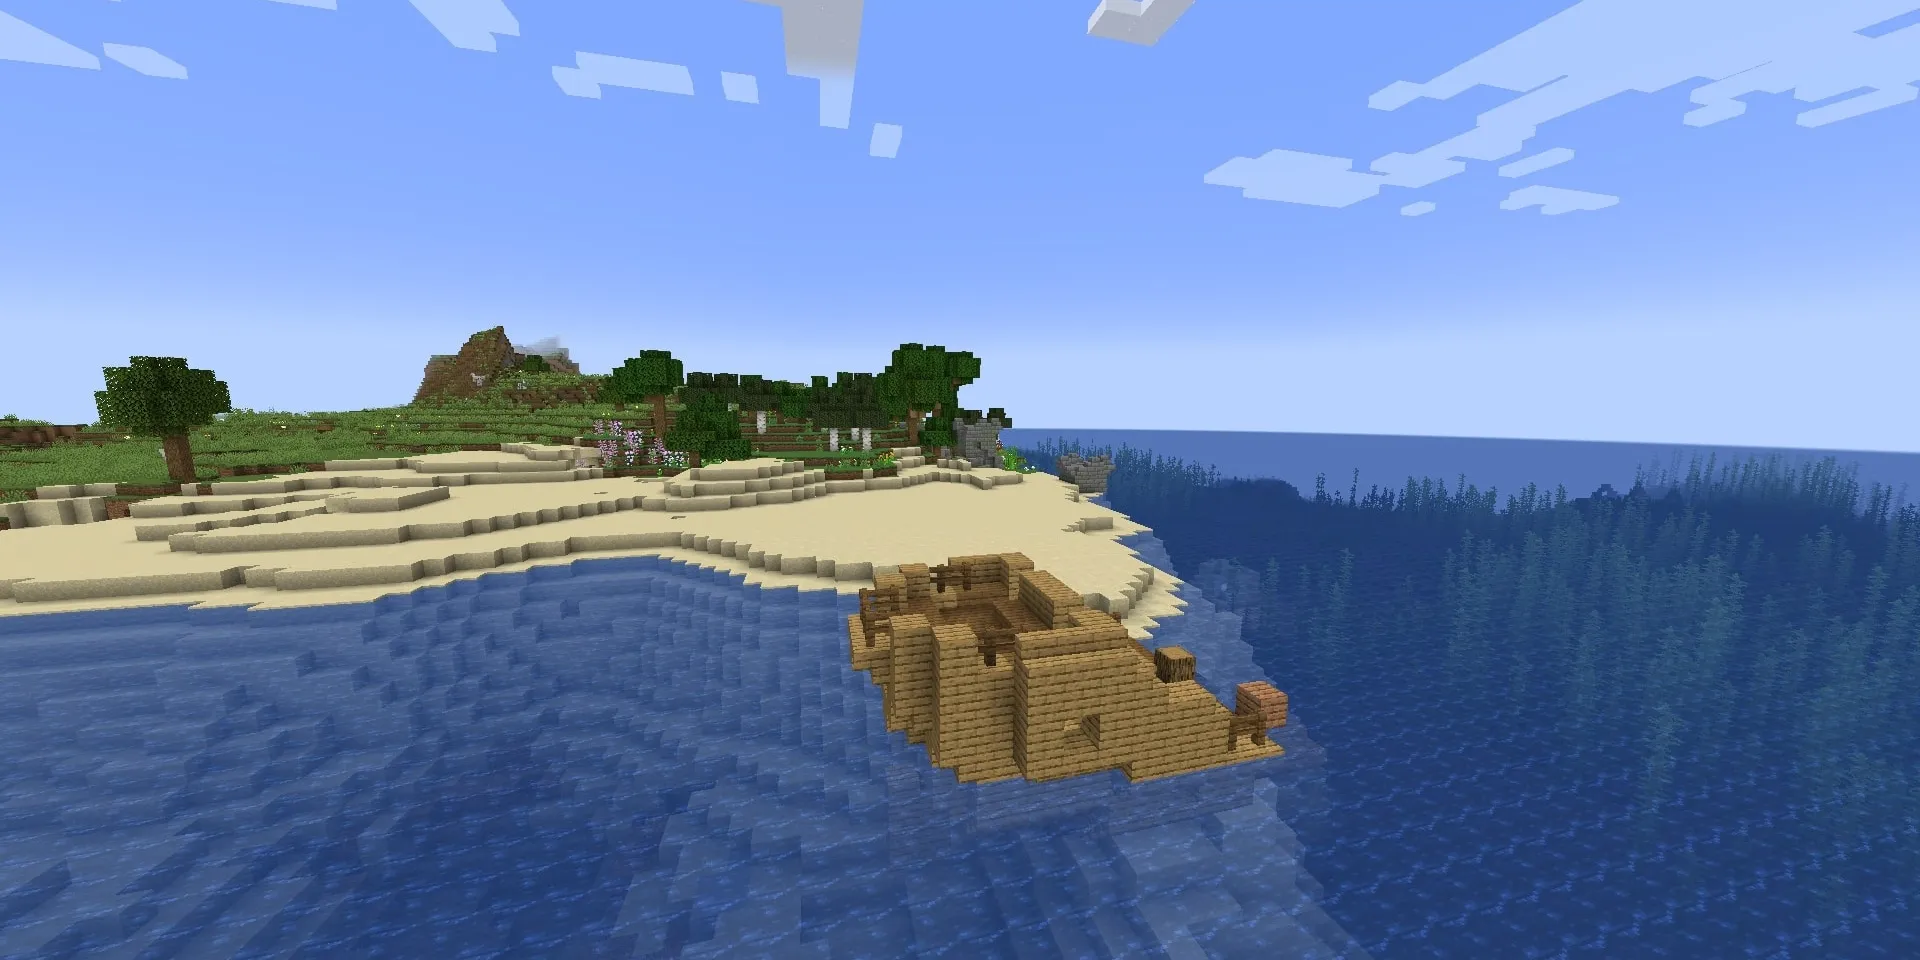 Bateau coulé sur une île avec des ruines sous-marines et une plage